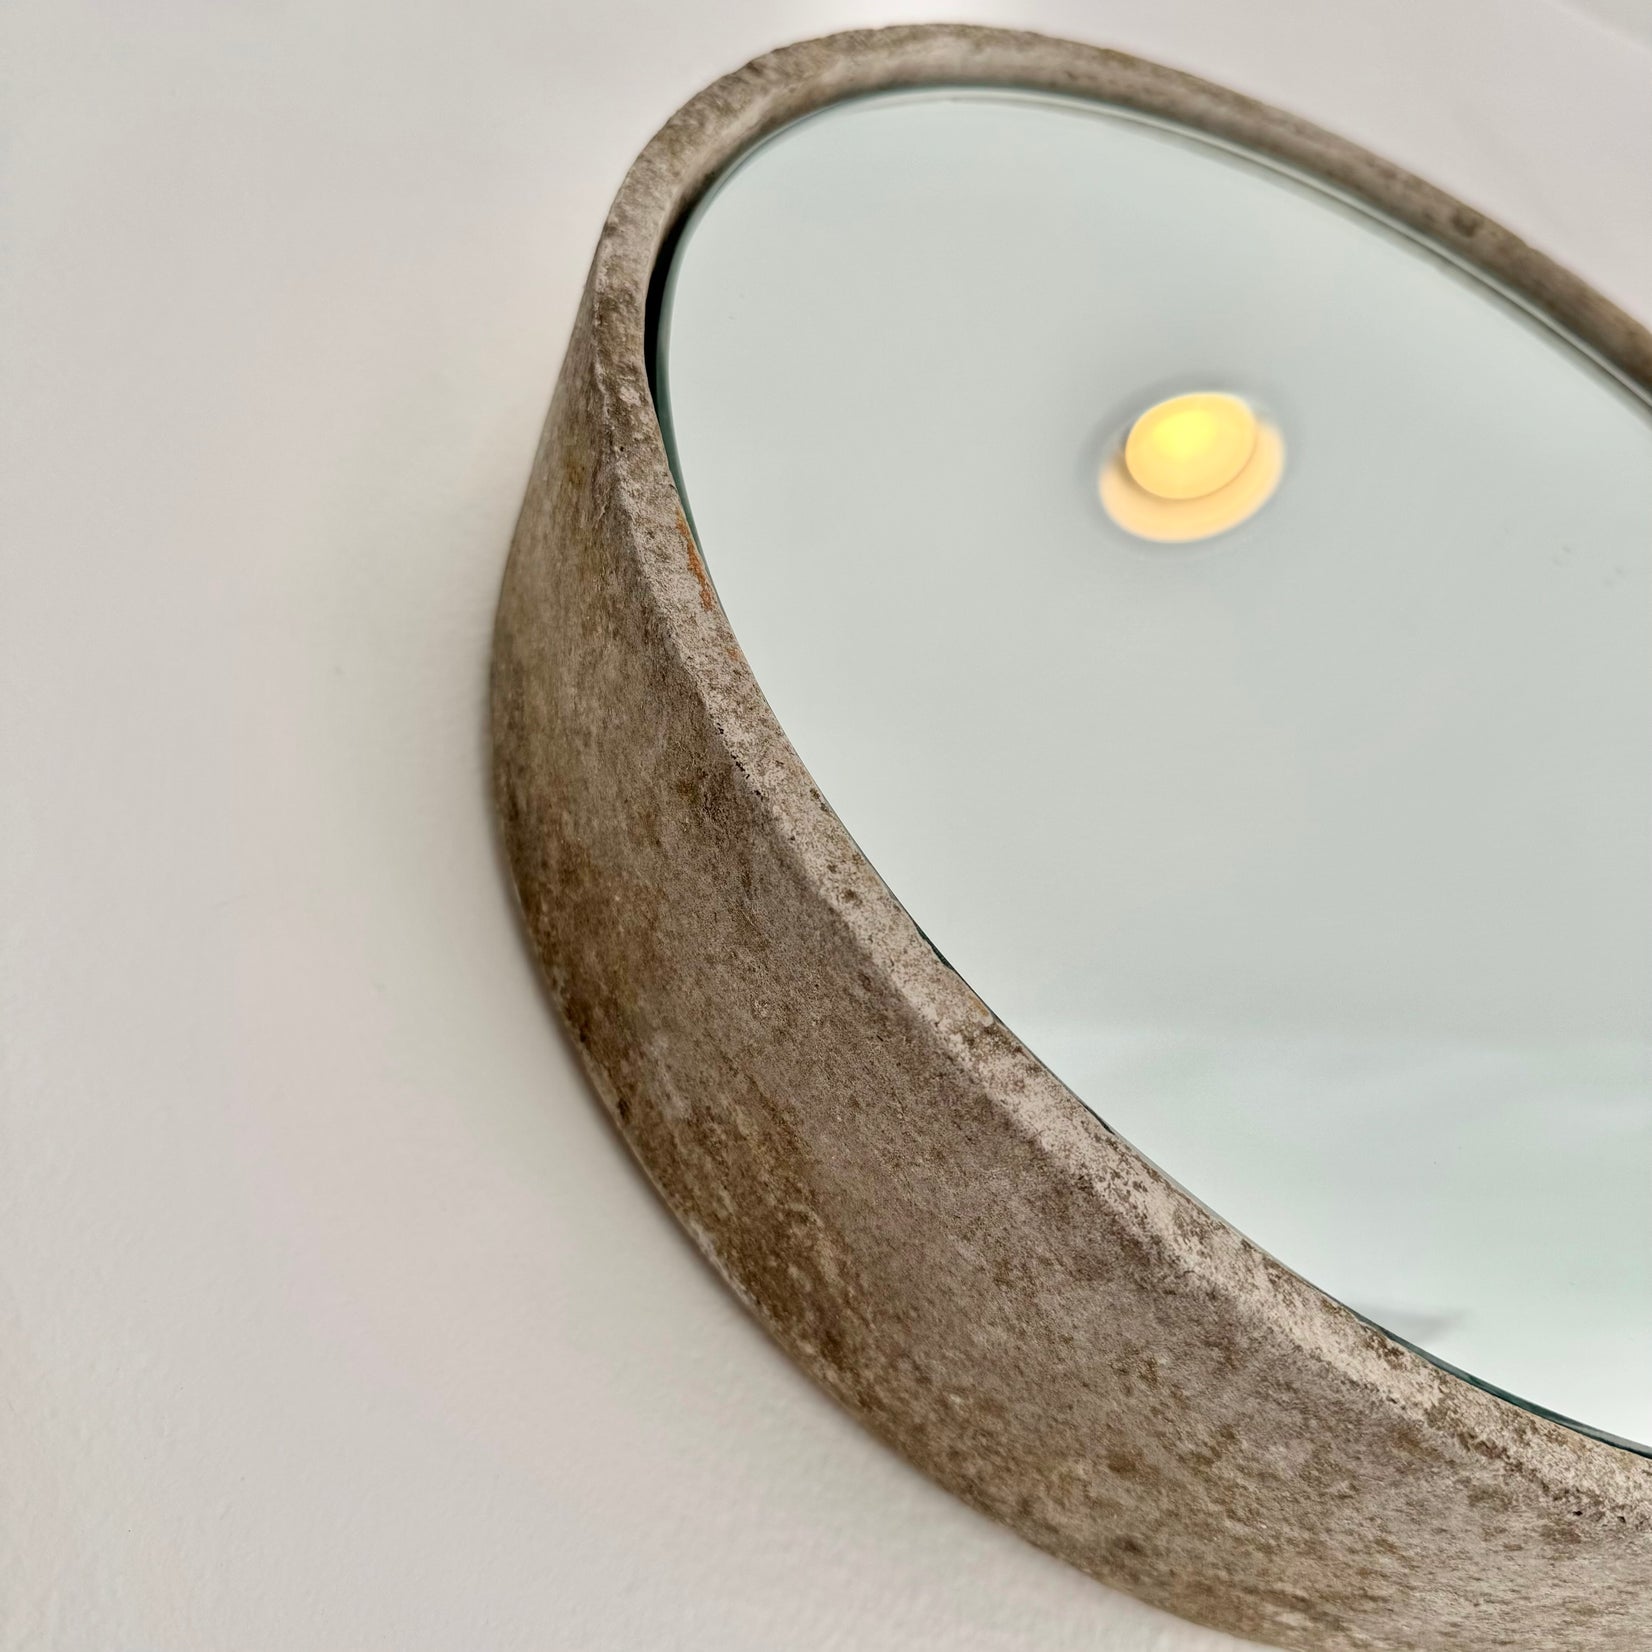 Circular Willy Guhl Concrete Mirror, 1960s Switzerland